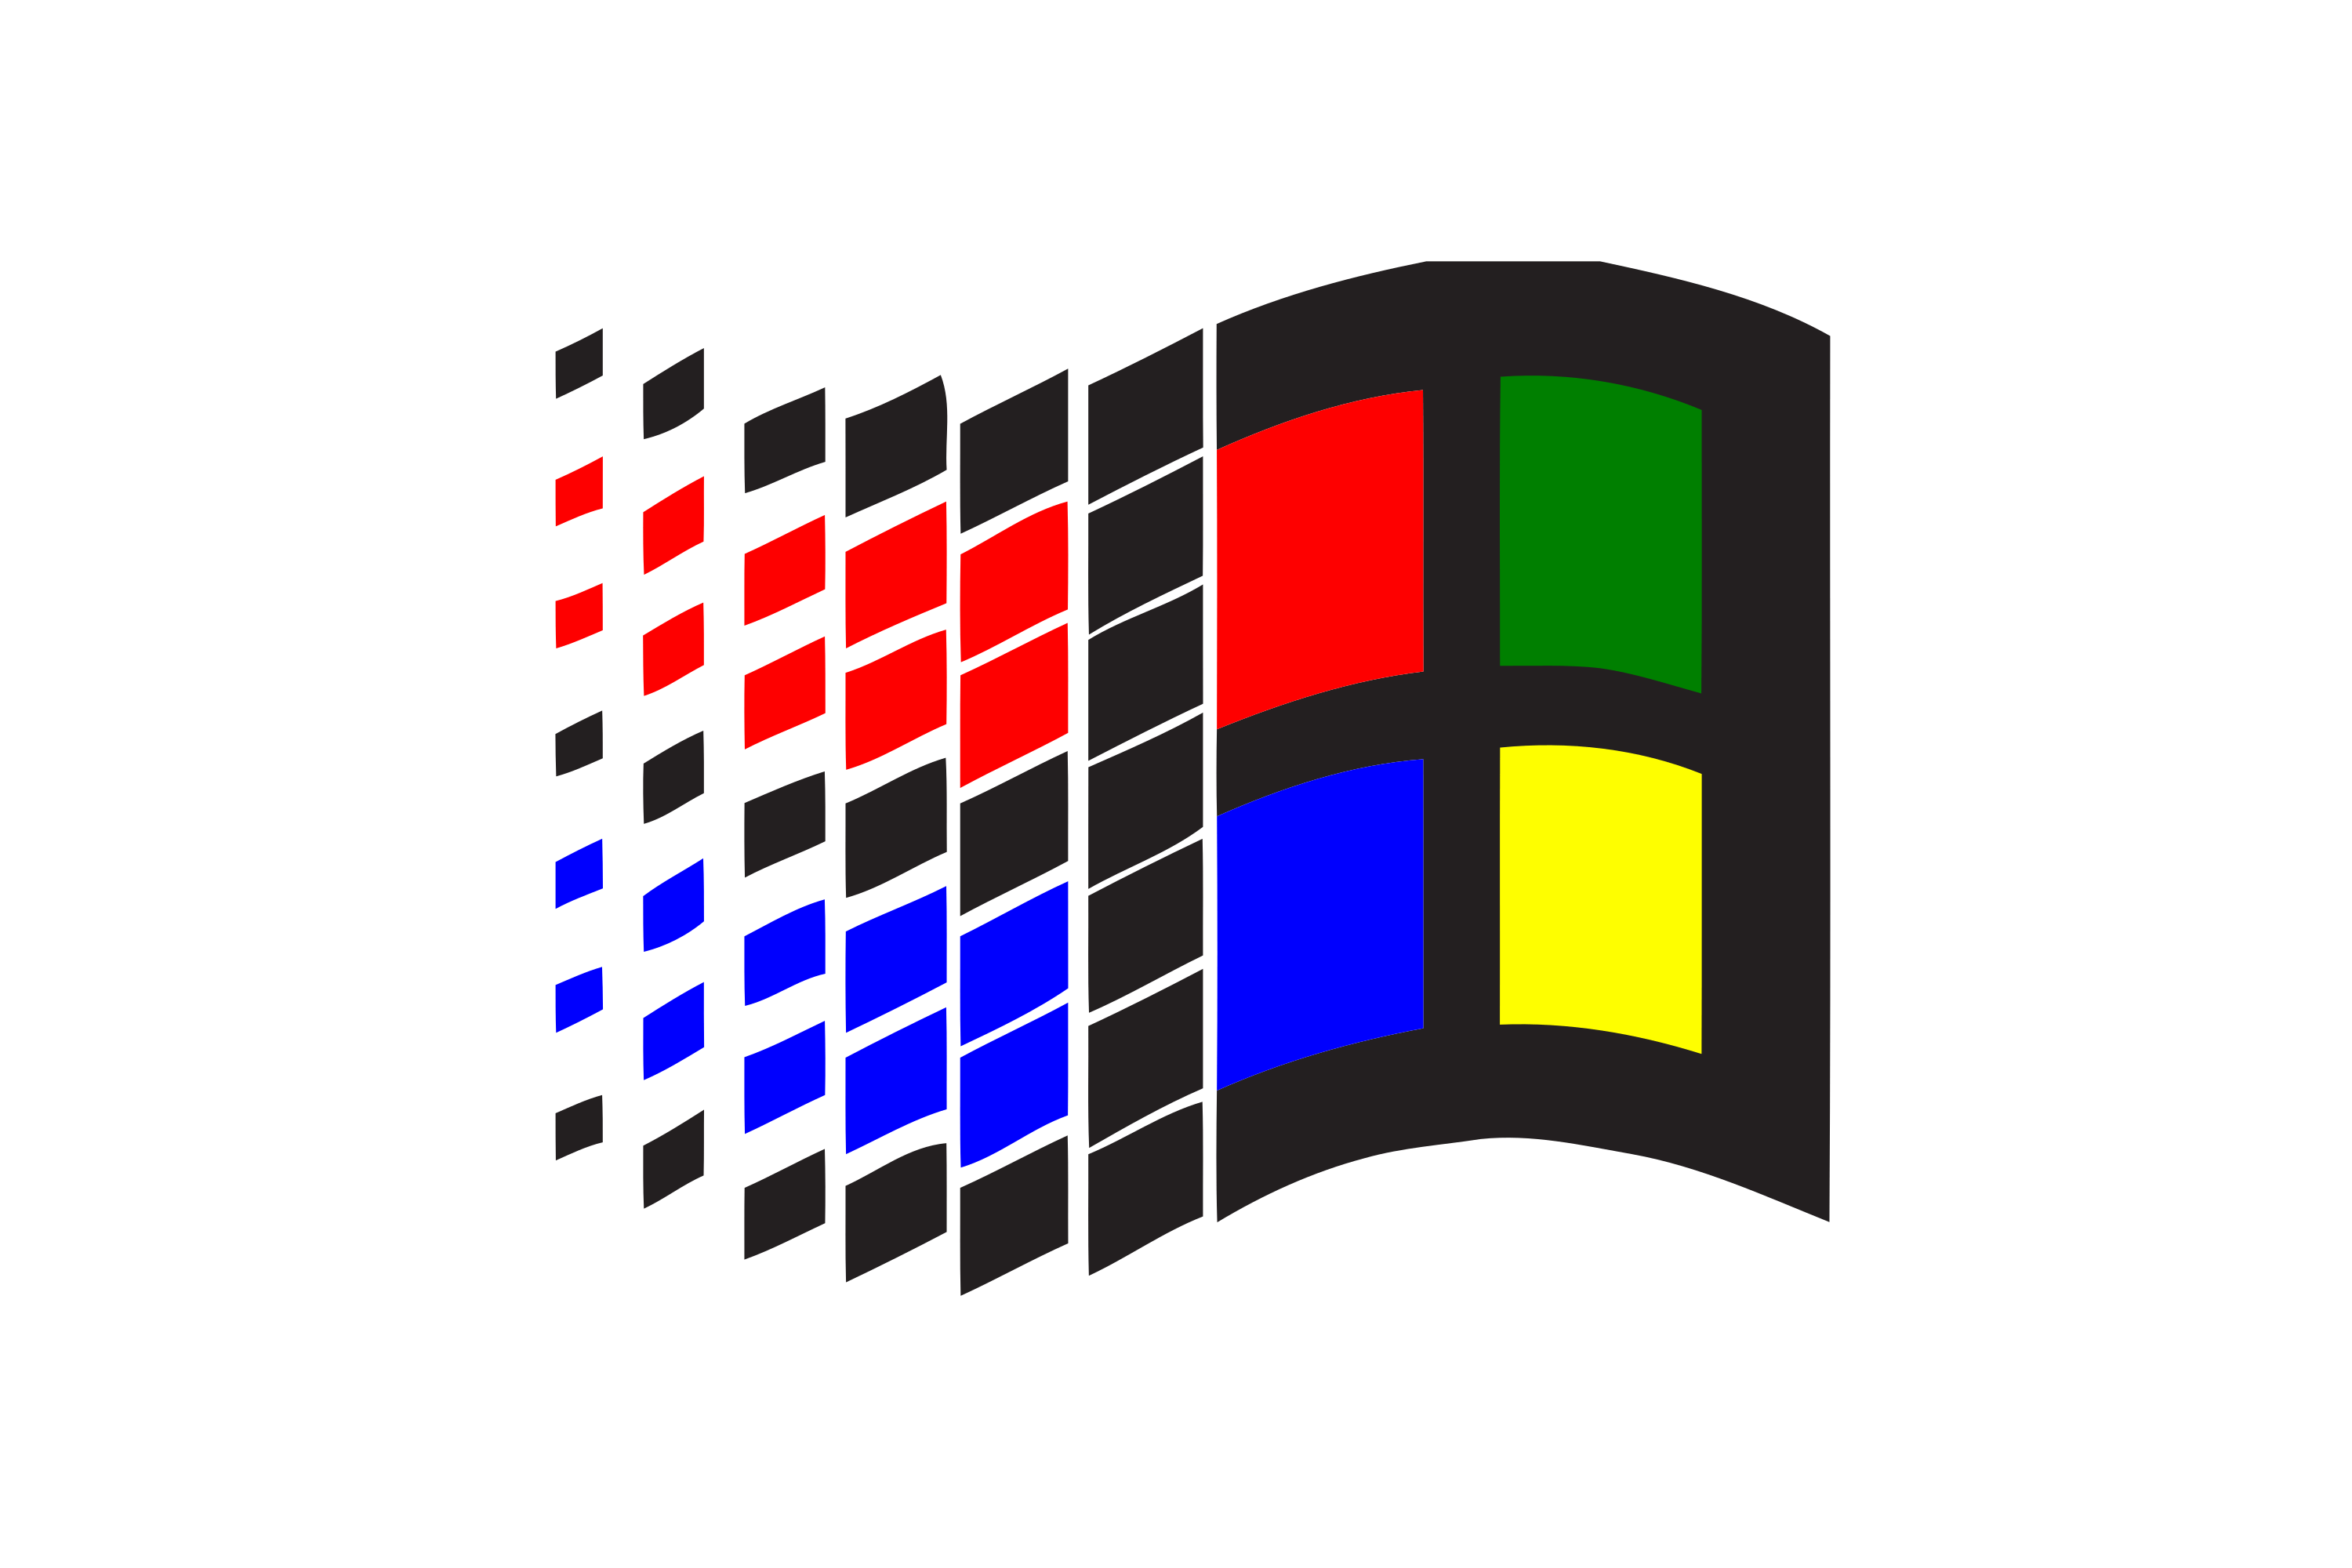 Виндовс NT 3.1. Windows NT 3.1 лого. ОС виндовс 3.0. Значок виндовс NT 3.1. Знак майкрософт